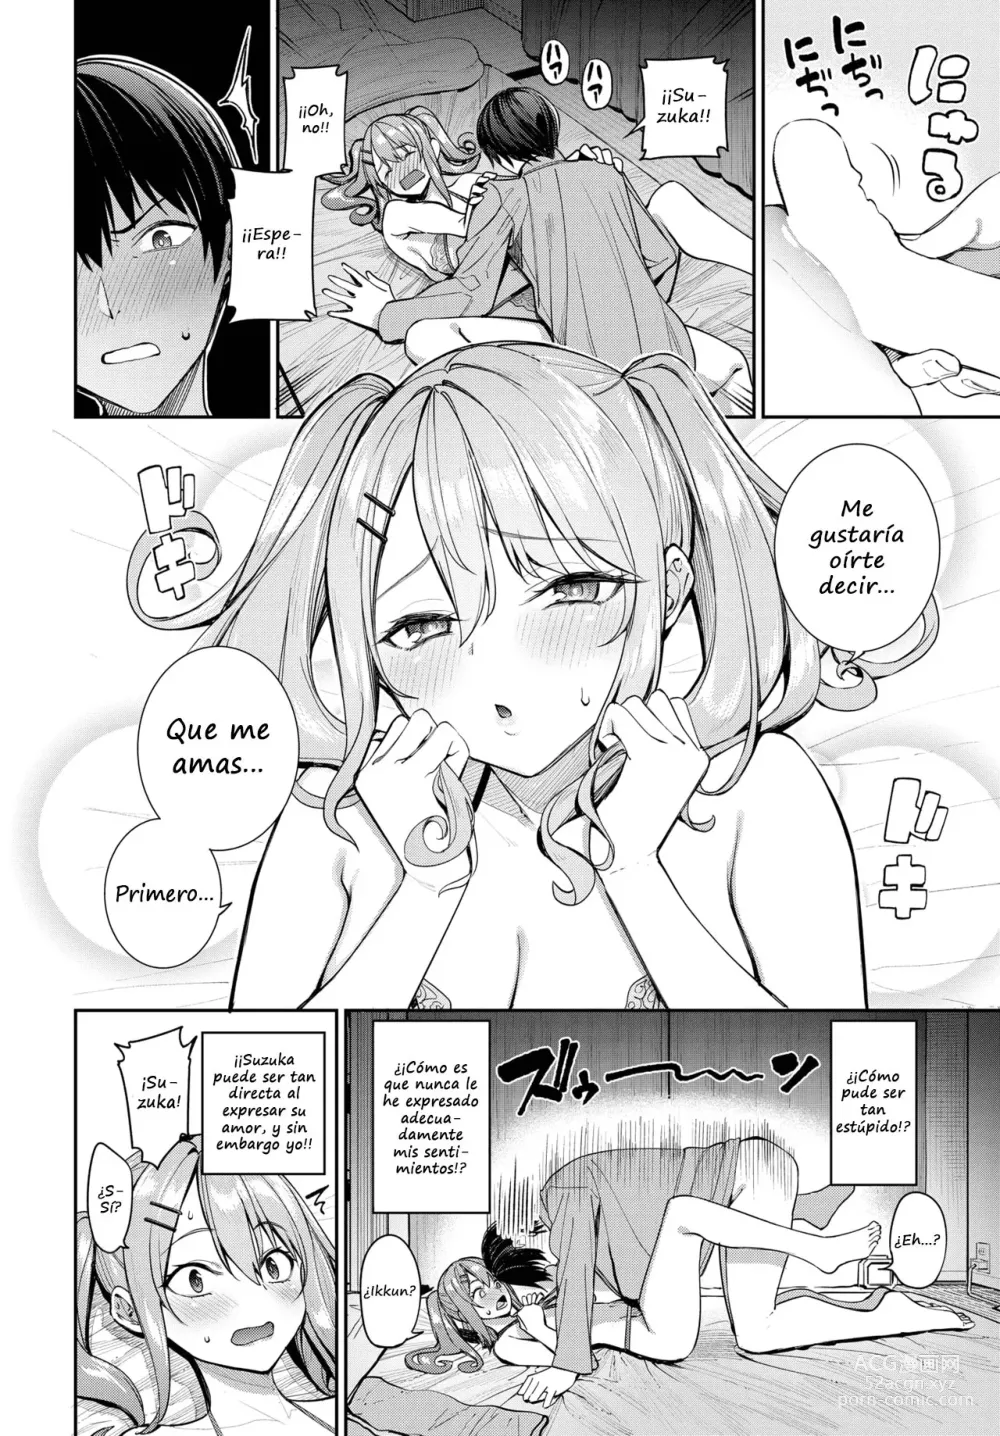 Page 12 of manga Moral Crisis!